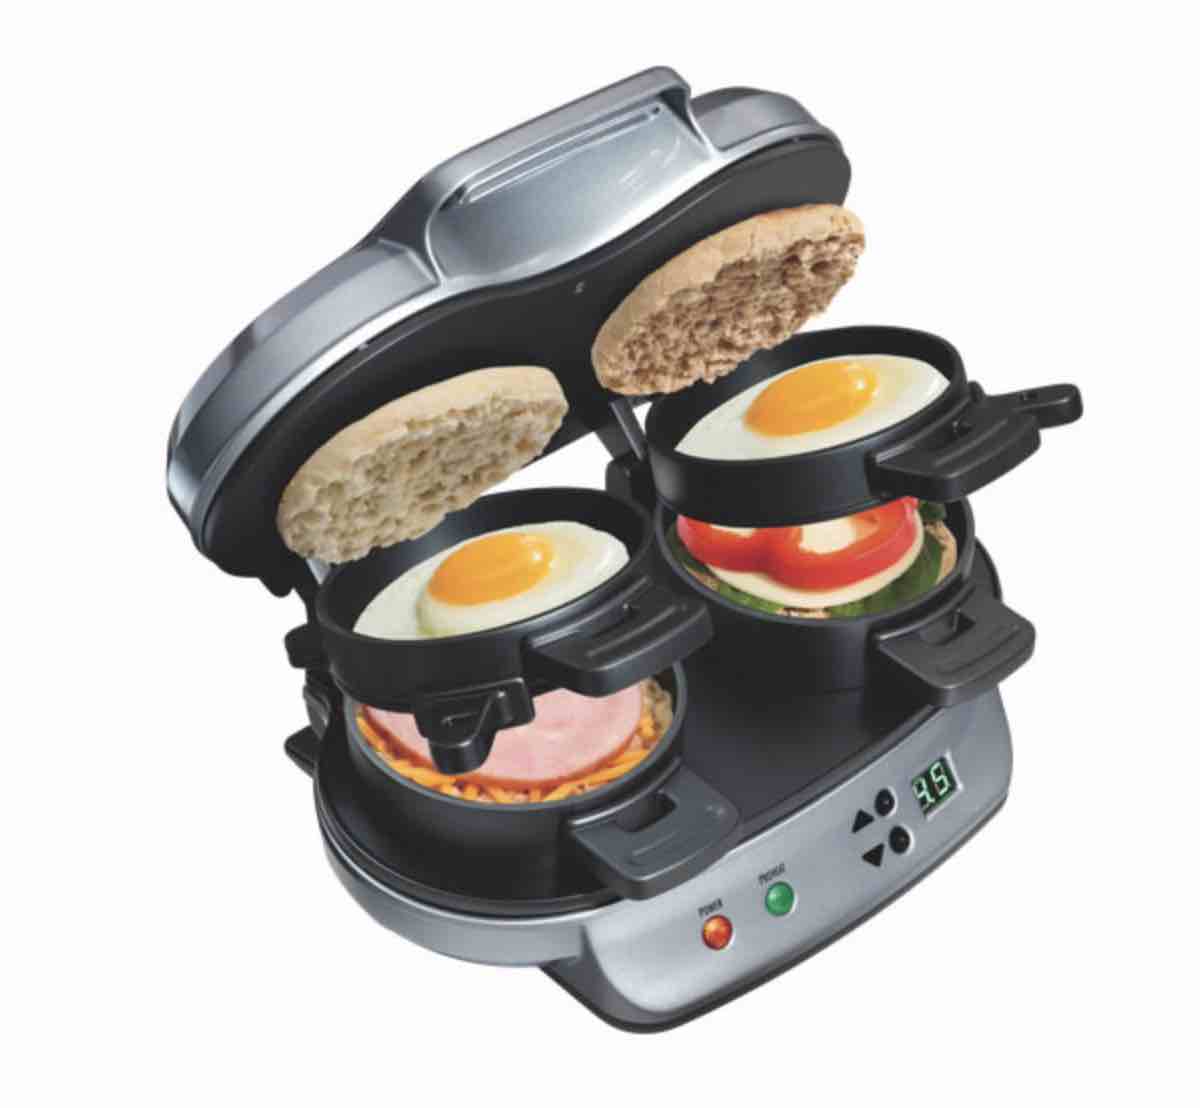 breakfast sandwich maker back to school small kitchen appliances